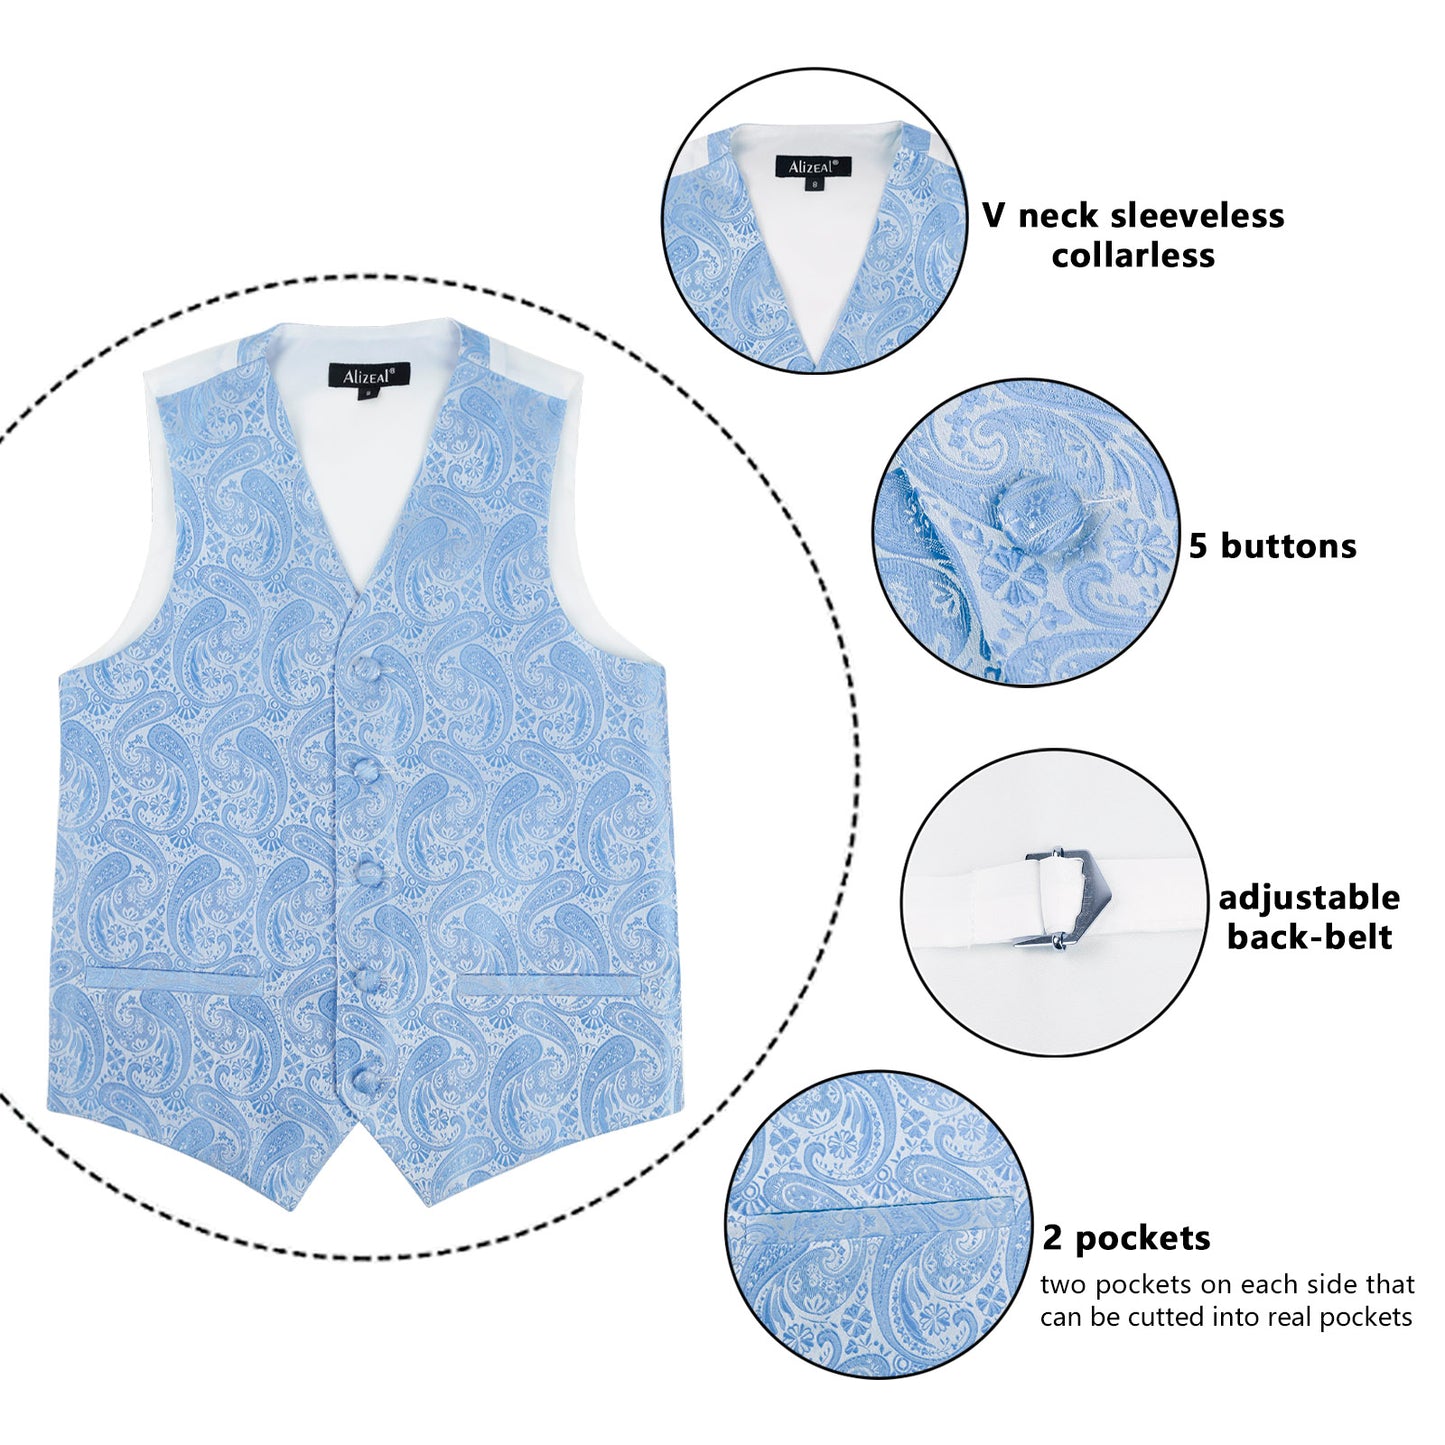 Boy's Paisley Jacquard Pre-Tied Bow Tie with Classic Floral Dress Suit Vest Set, 077-Light Blue